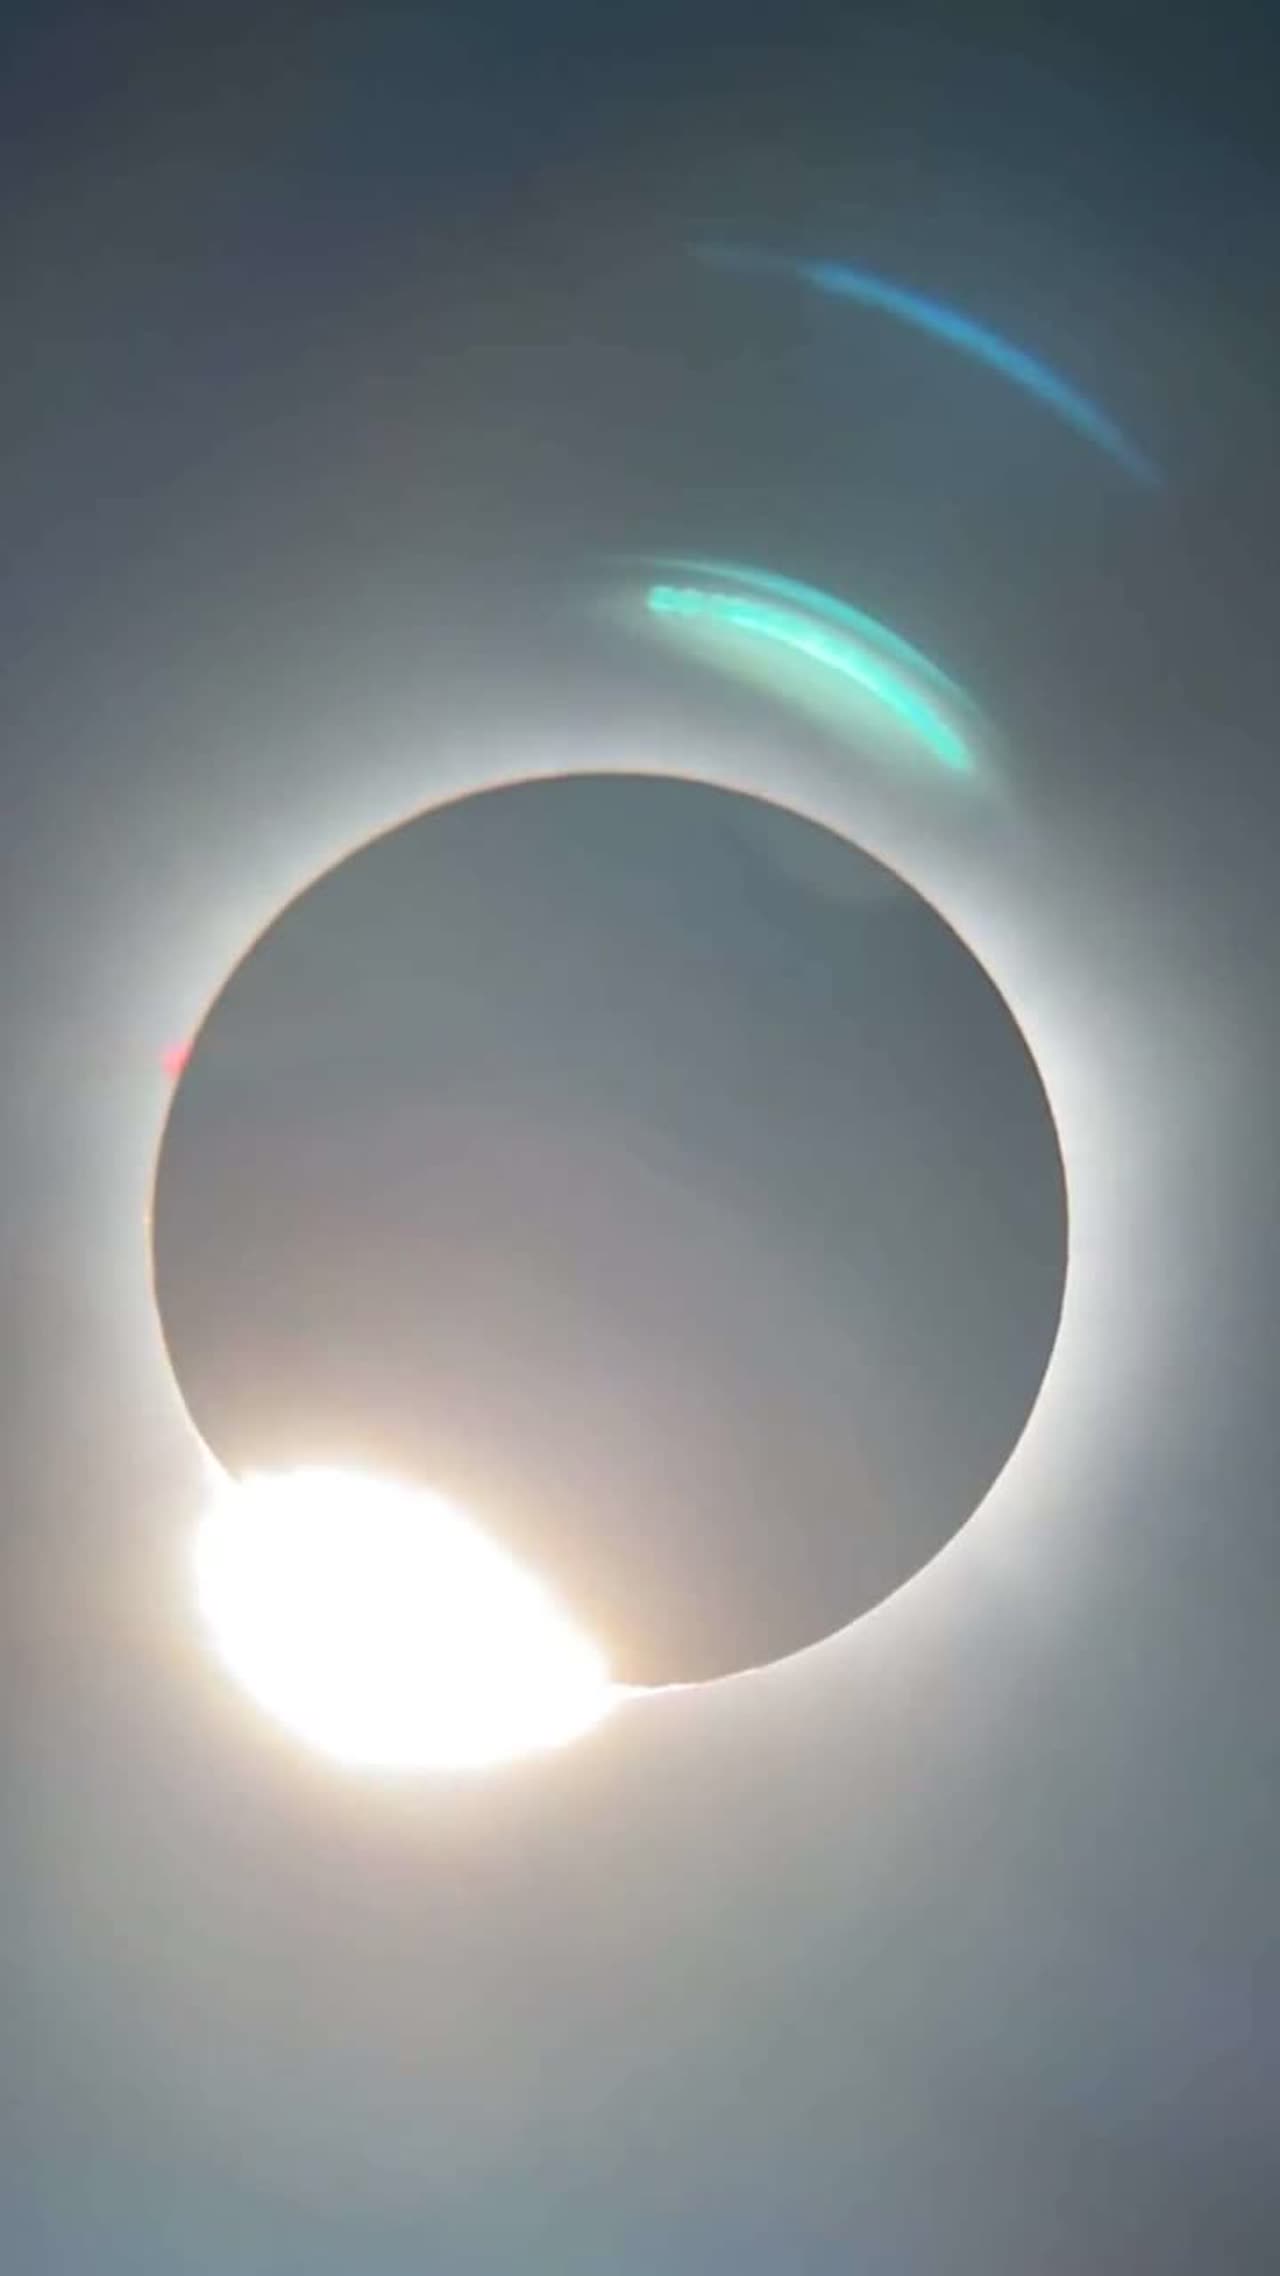 Watch: Solar Eclipse engulfs North America